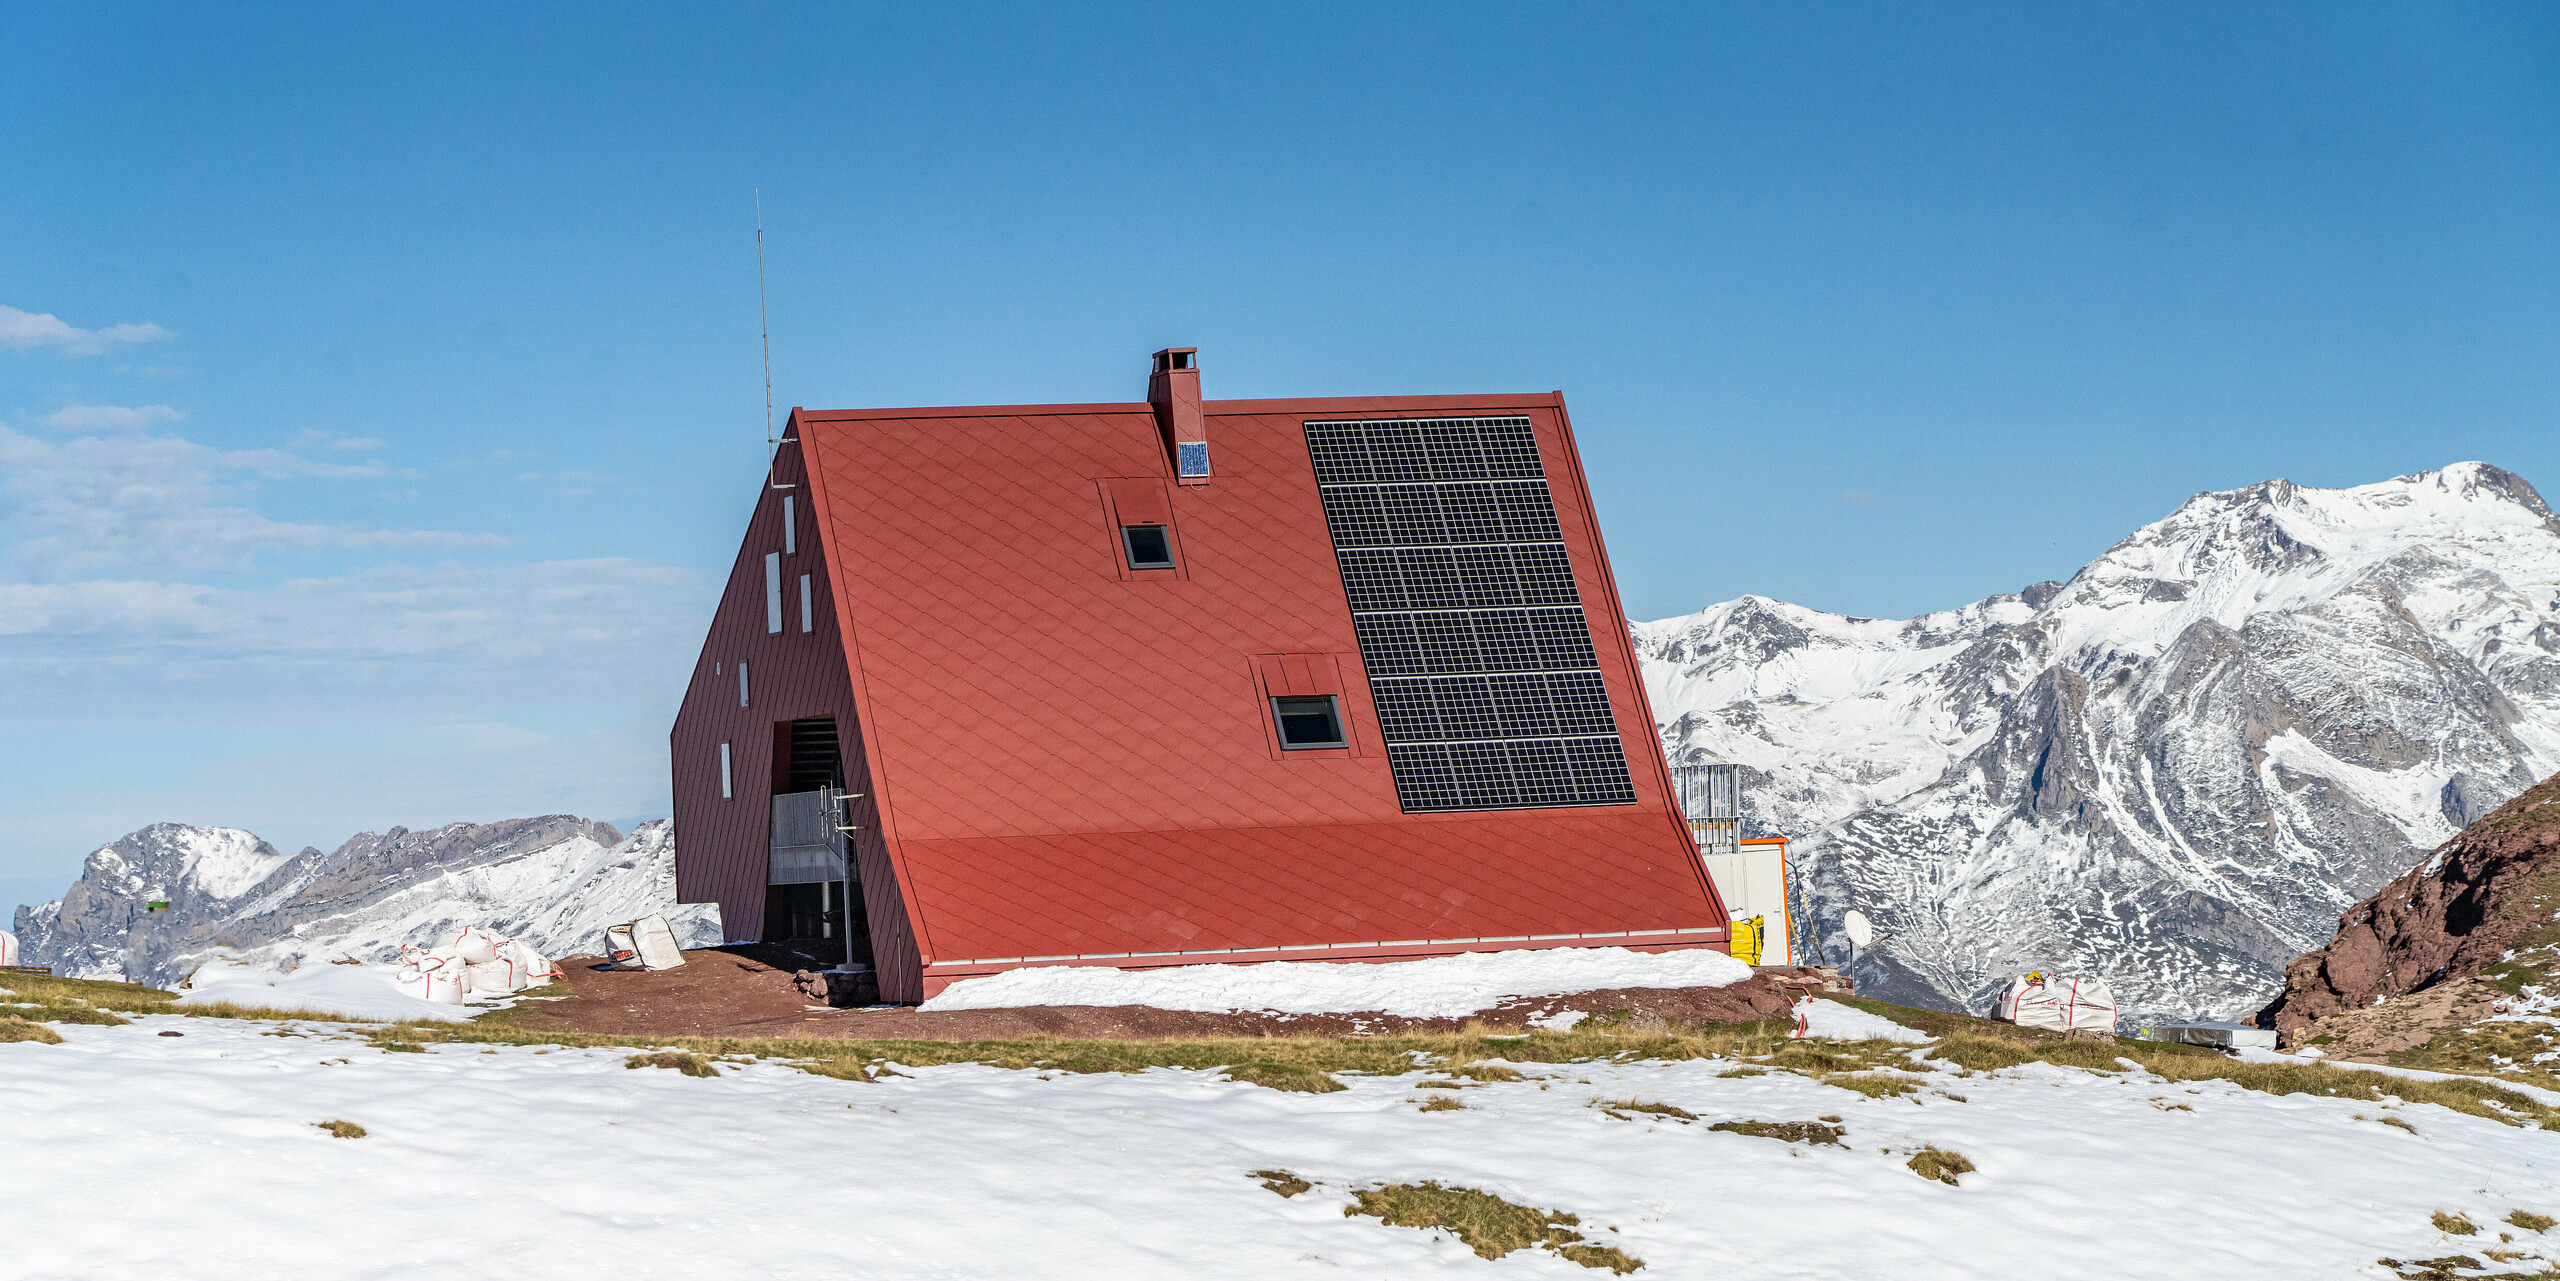 Rund um die Schutzhütte Arlet im Pyrenäen-Nationalpark ist eine traumhafte Berglandschaft zu sehen. Das Gebäude wurde mit PREFA Dach- und Wandrauten 44x44 in P.10 Oxydrot eingedeckt.